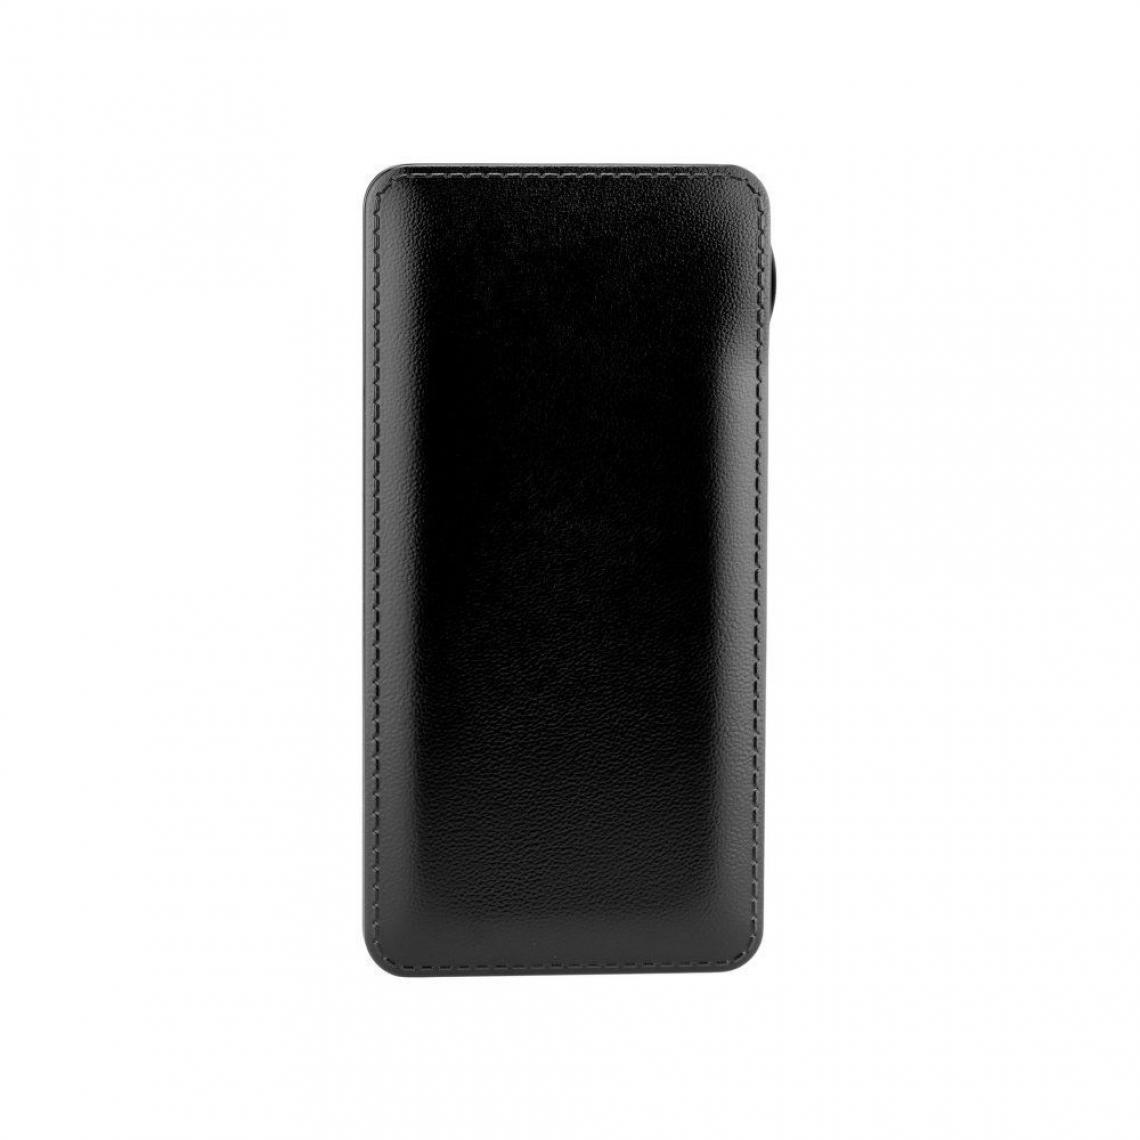 Ozzzo - Chargeur batterie externe 20000 mAh powerbank ozzzo noir pour Logicom L-ement Tab 1048 - Autres accessoires smartphone